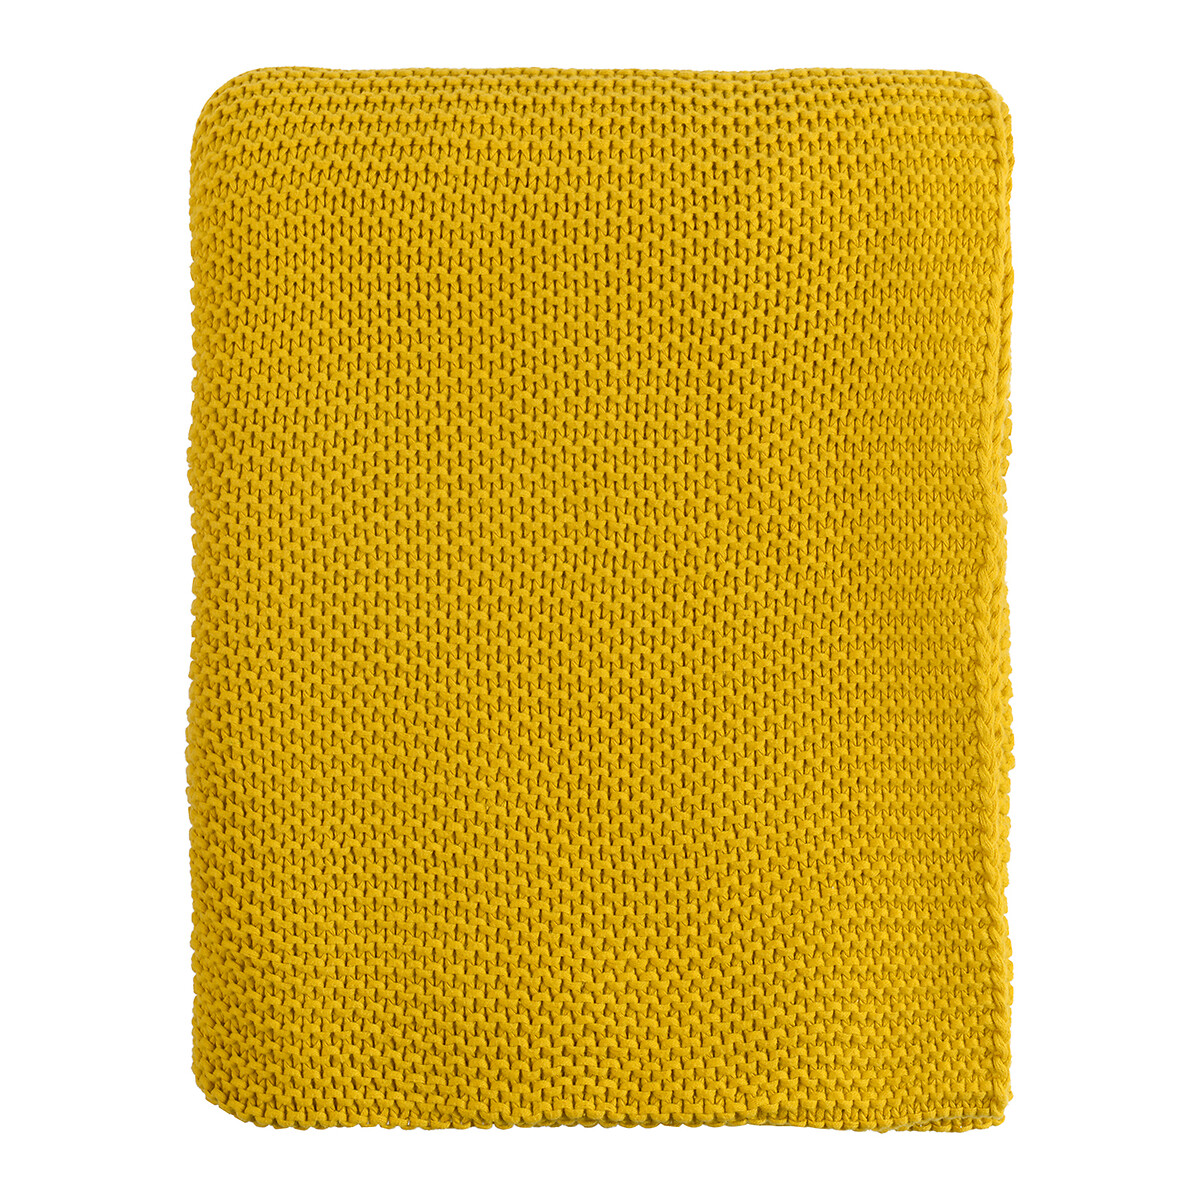 Плед Из хлопка жемчужной вязки Essential 130 x 180 см желтый LaRedoute, размер 130 x 180 см - фото 2